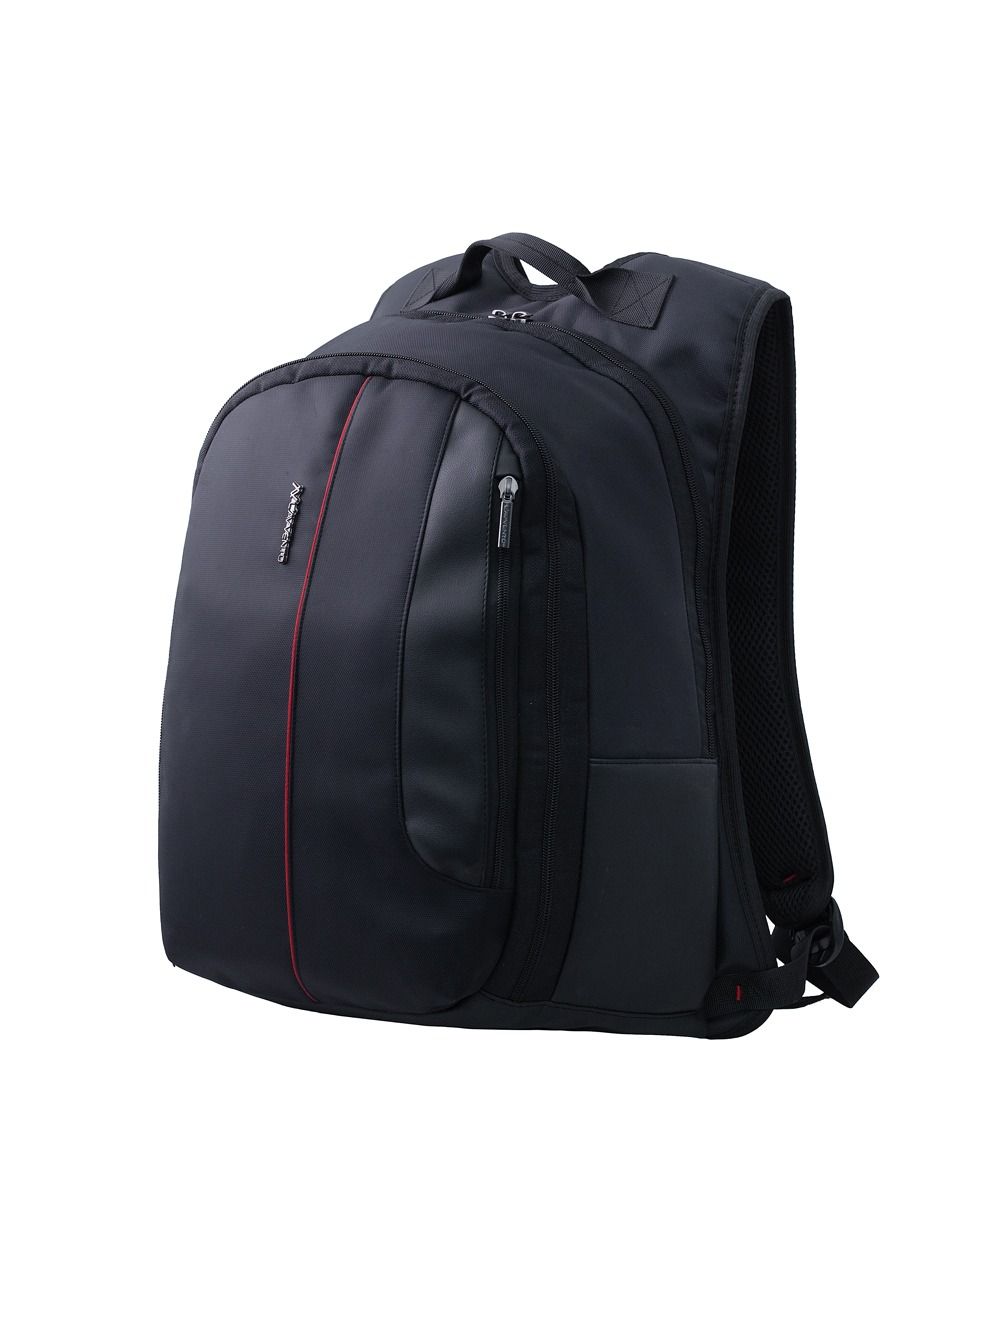 L'avvento (BG73B) laptops Discovery Backpack Bag - 15.6 inch - Black price  in Egypt,  Egypt